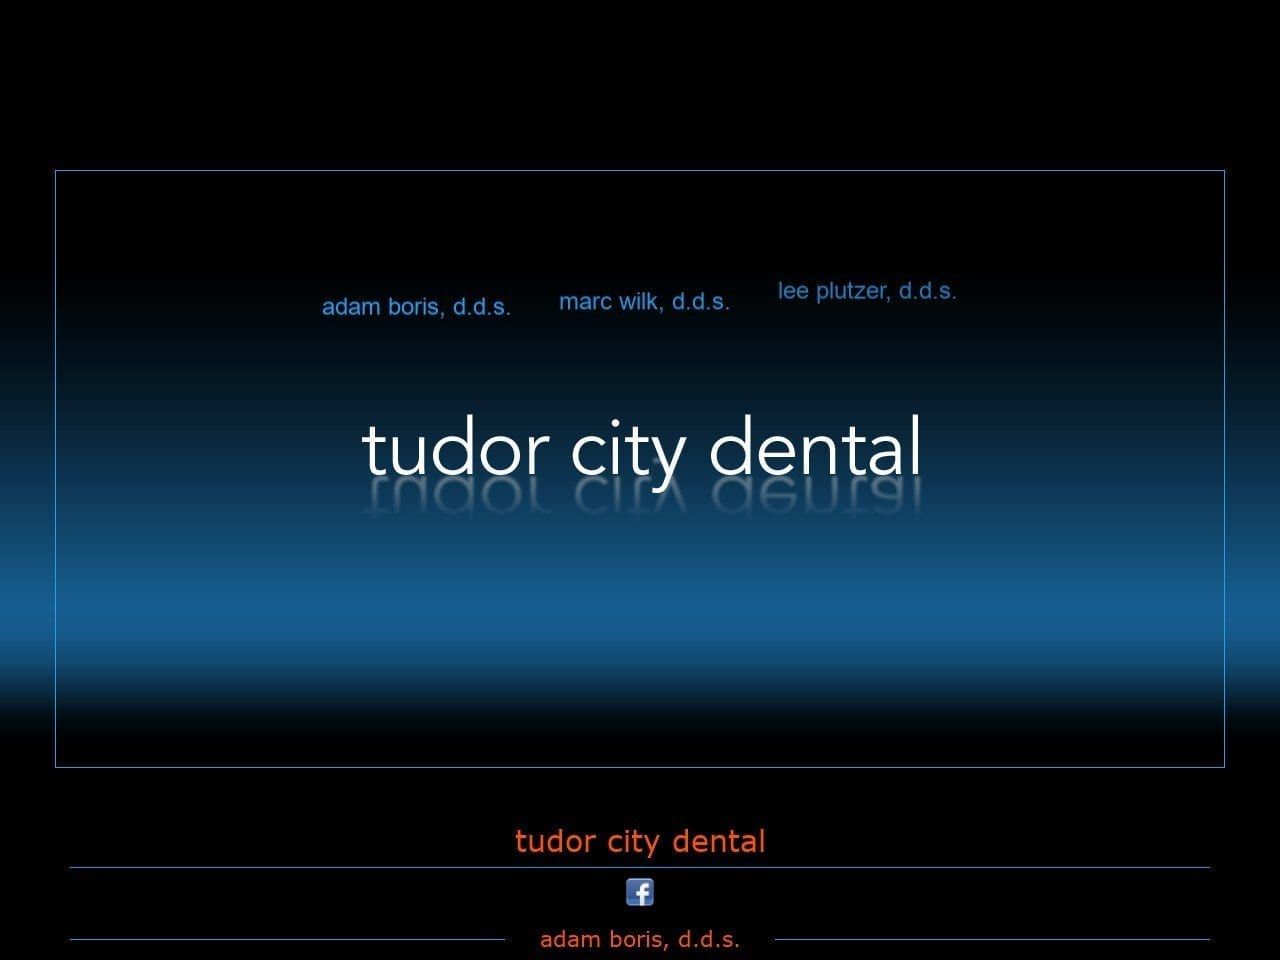 Tudor City Dental Group Website Screenshot from tudorcitydental.com